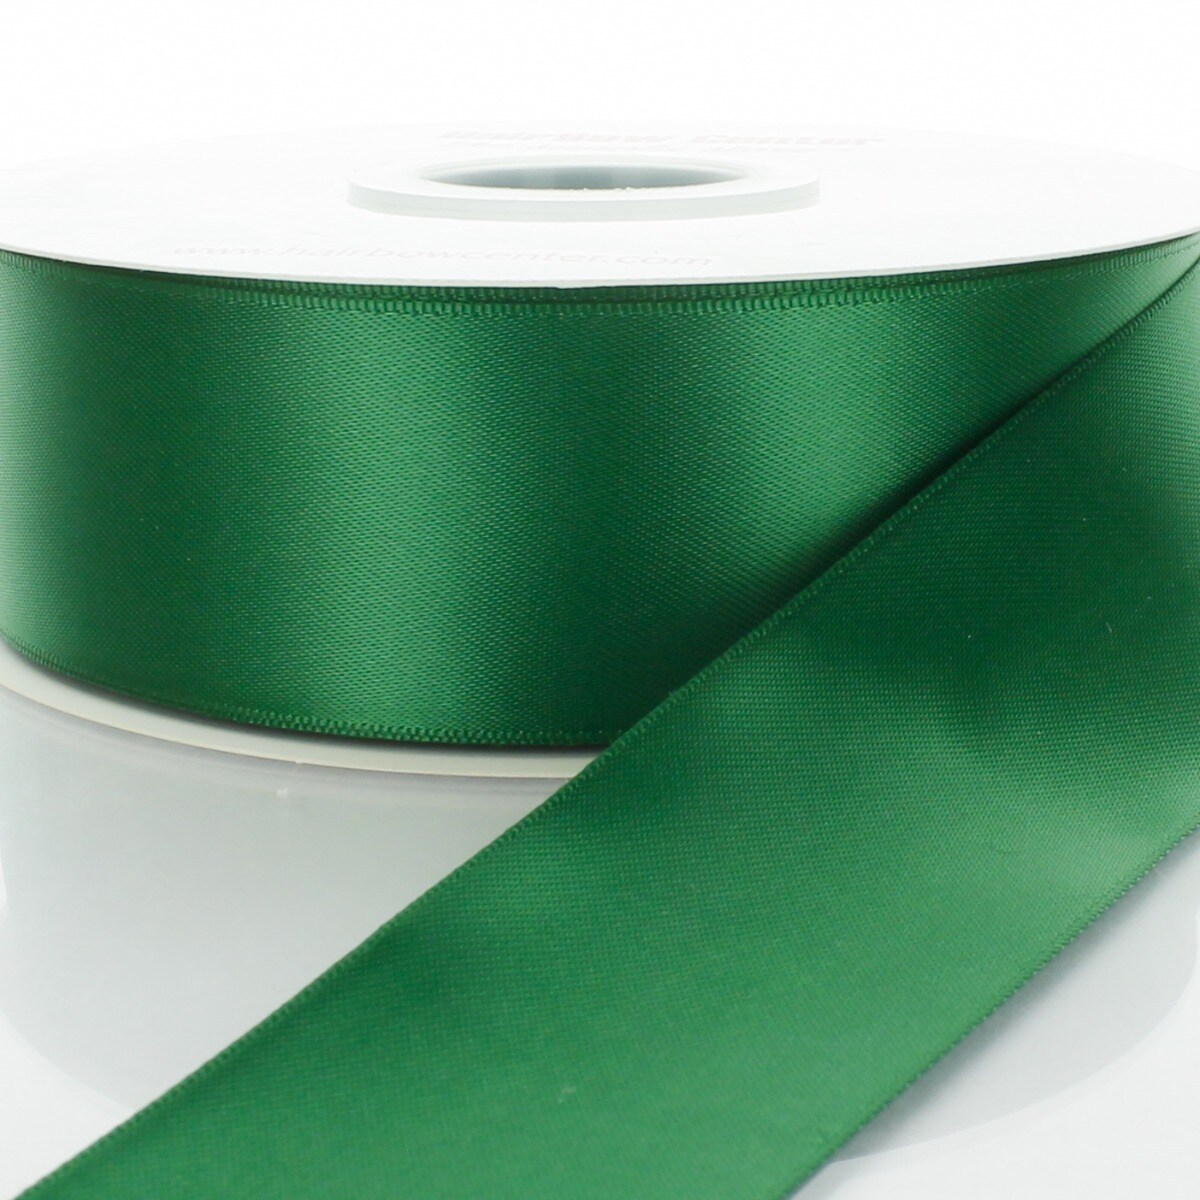 1 x 2yd. Lace Trim Ribbon by Celebrate It®